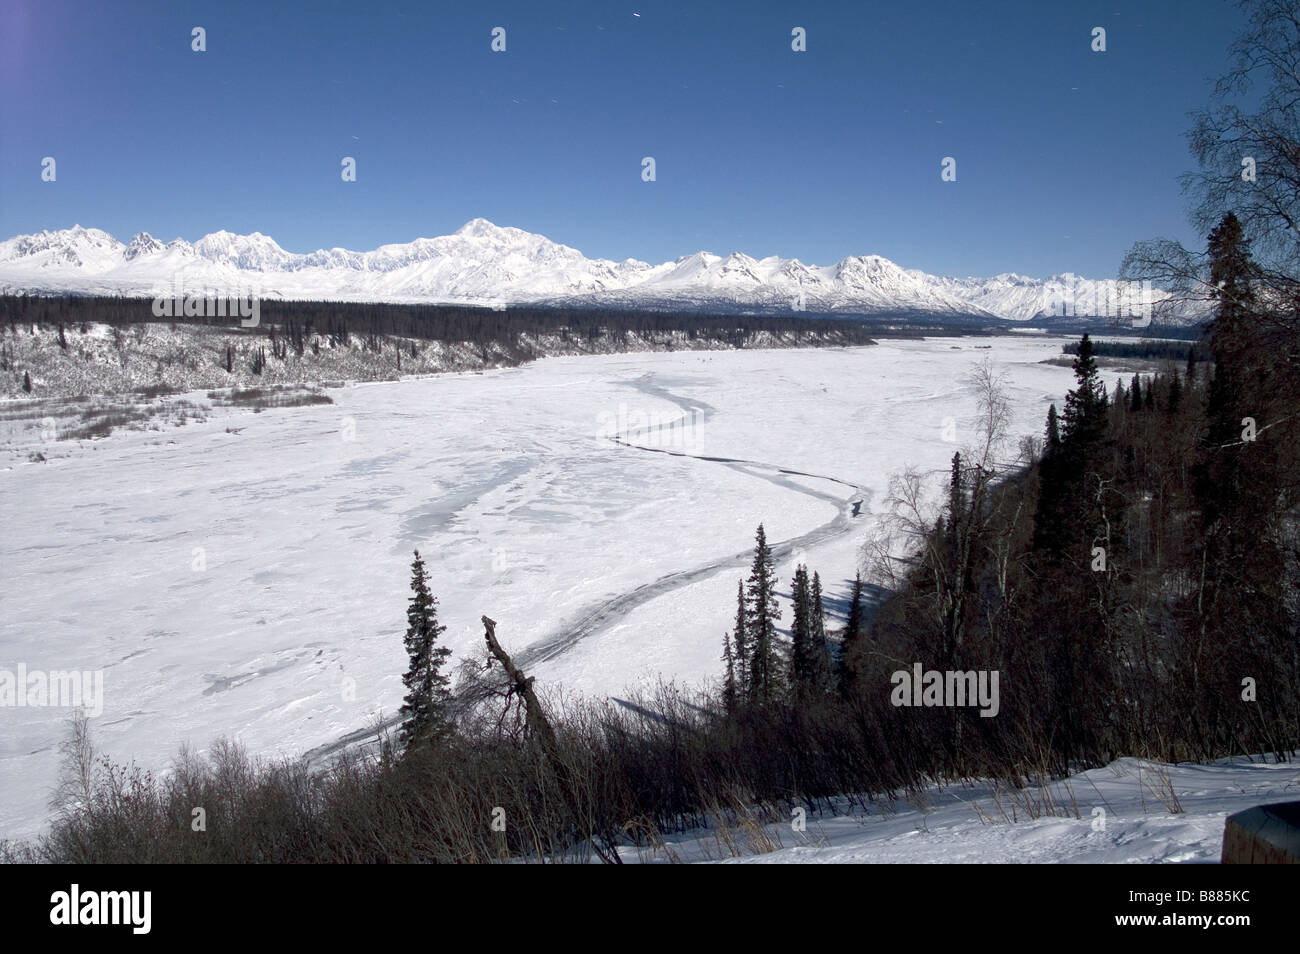 Mt McKinley Montagnes Alaska Denali National Park États-Unis Amérique du Nord Banque D'Images